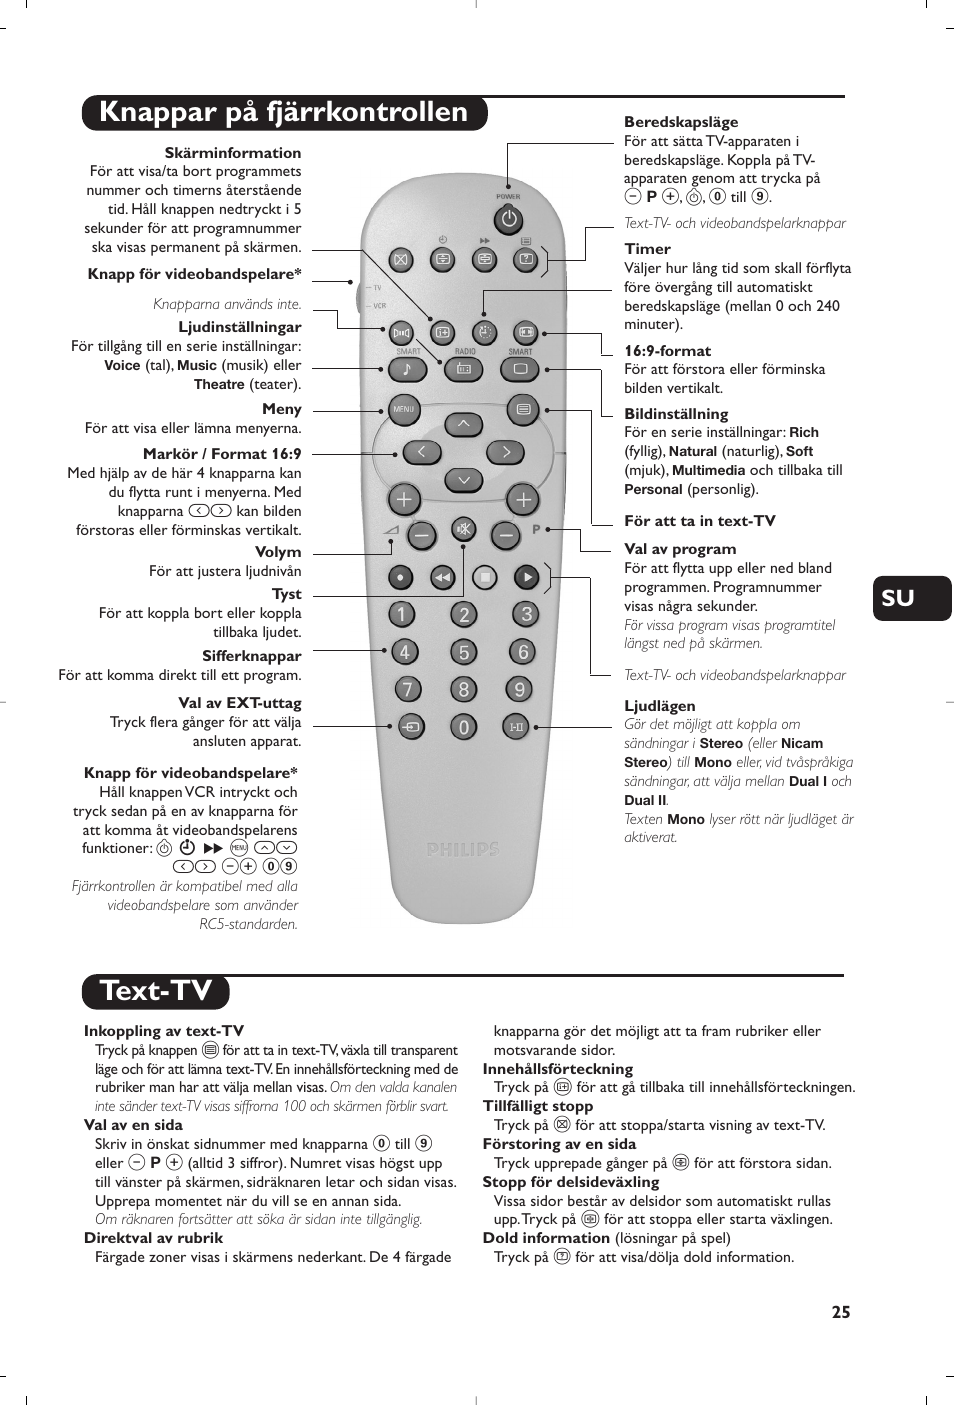 Knappar på fjärrkontrollen, Text-tv | Philips TV User Manual | Page 25 / 64  | Original mode